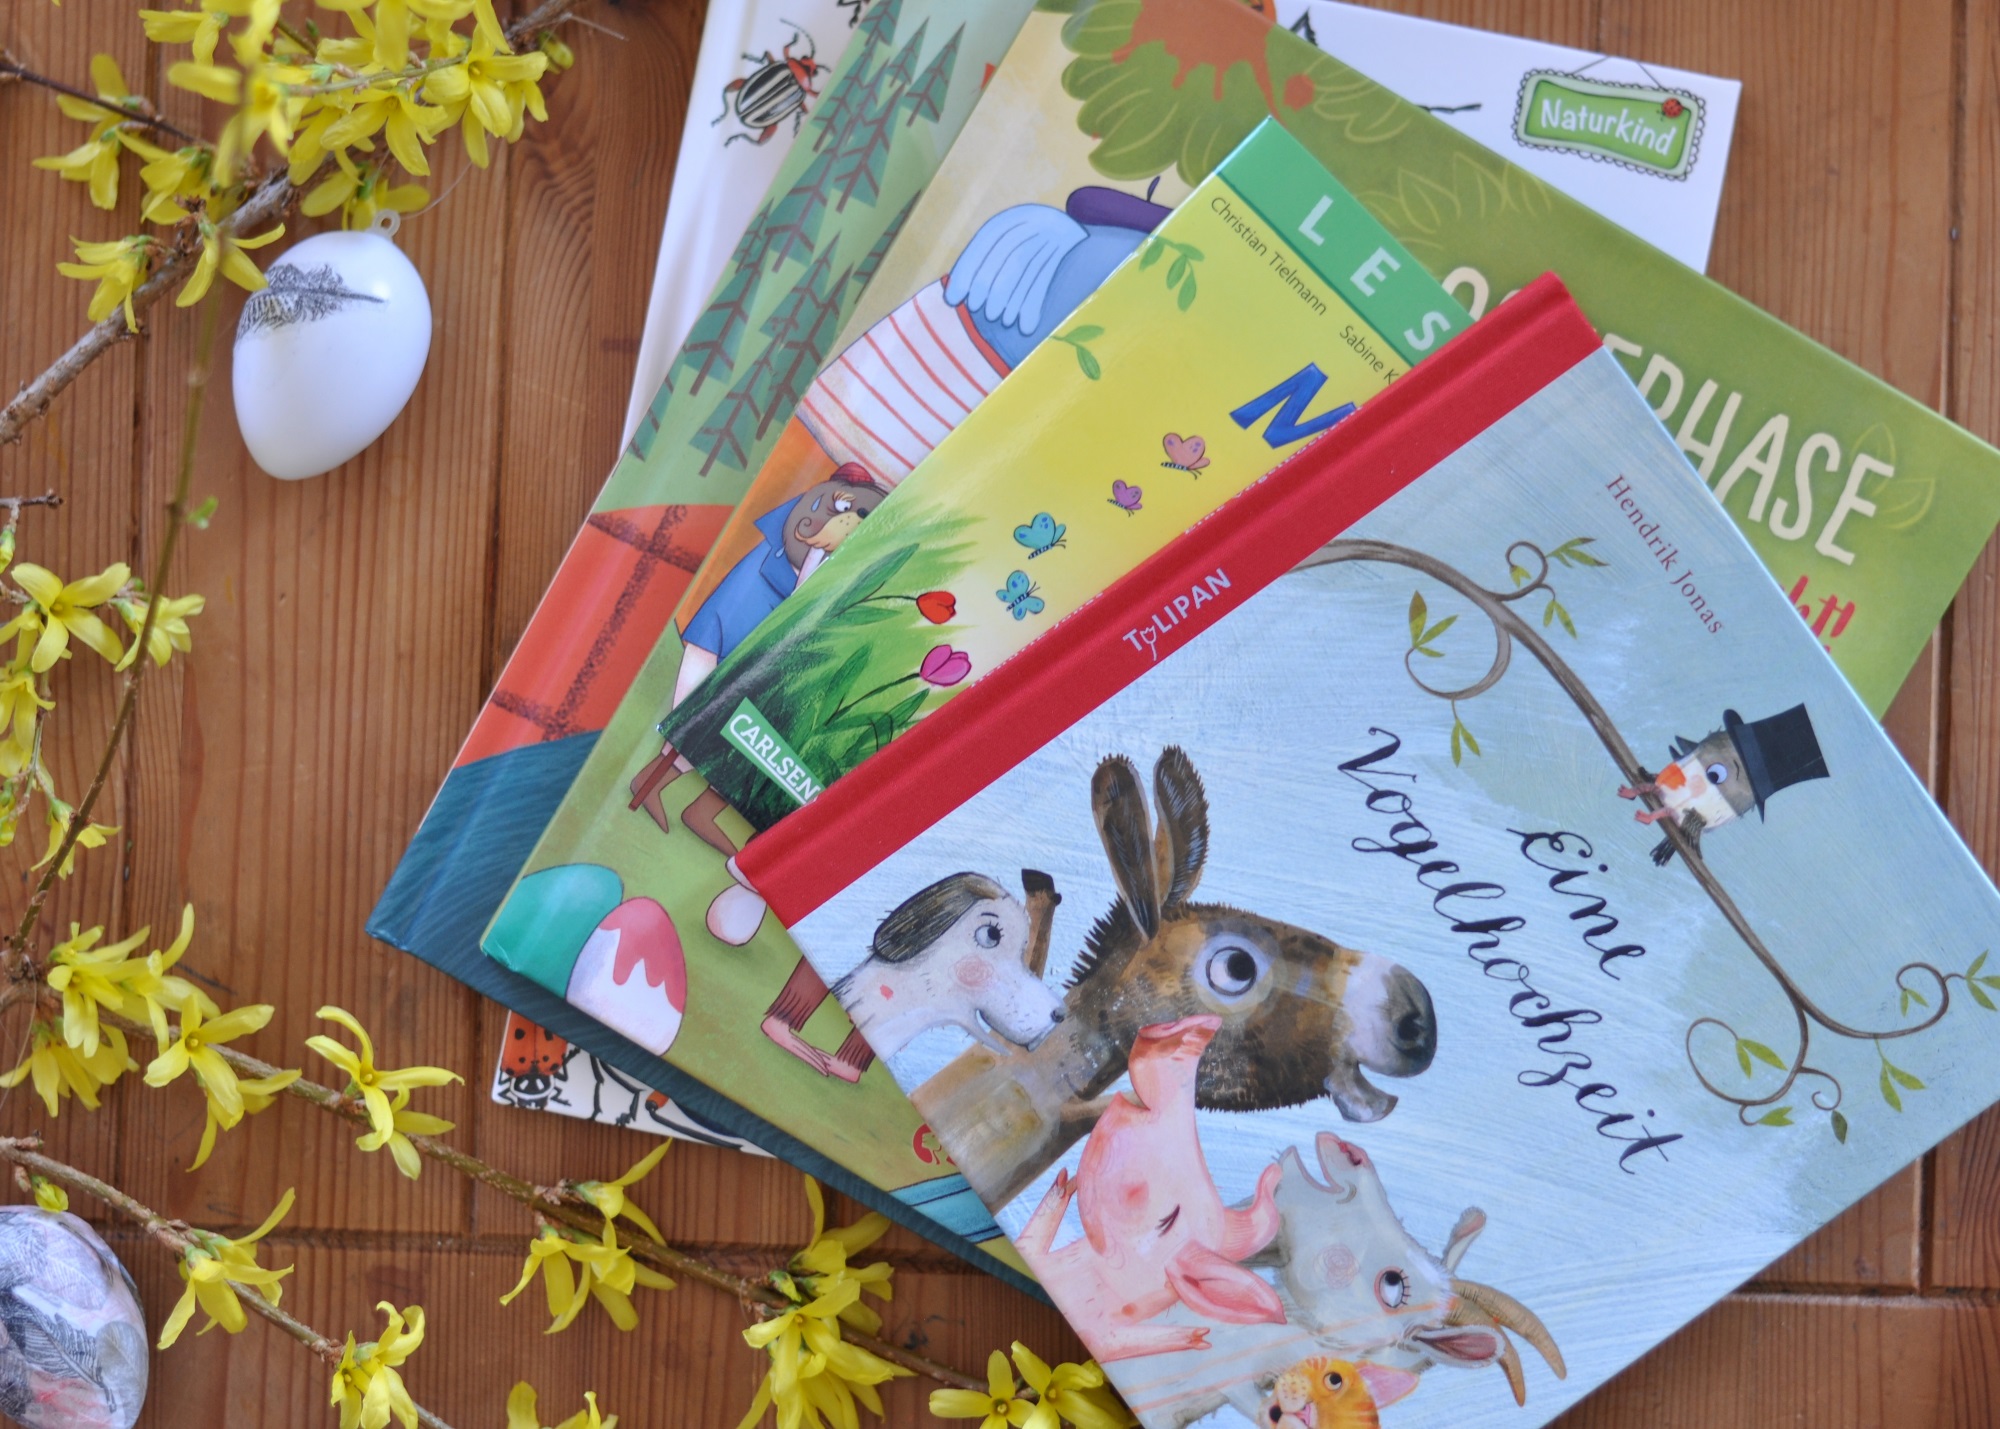 Bilderbücher zu Ostern un dFrühling - die schönsten Neuerscheinungen #Käfer #Ostern #Kinderbuch #Bilderbuch #Vogel #Frühling